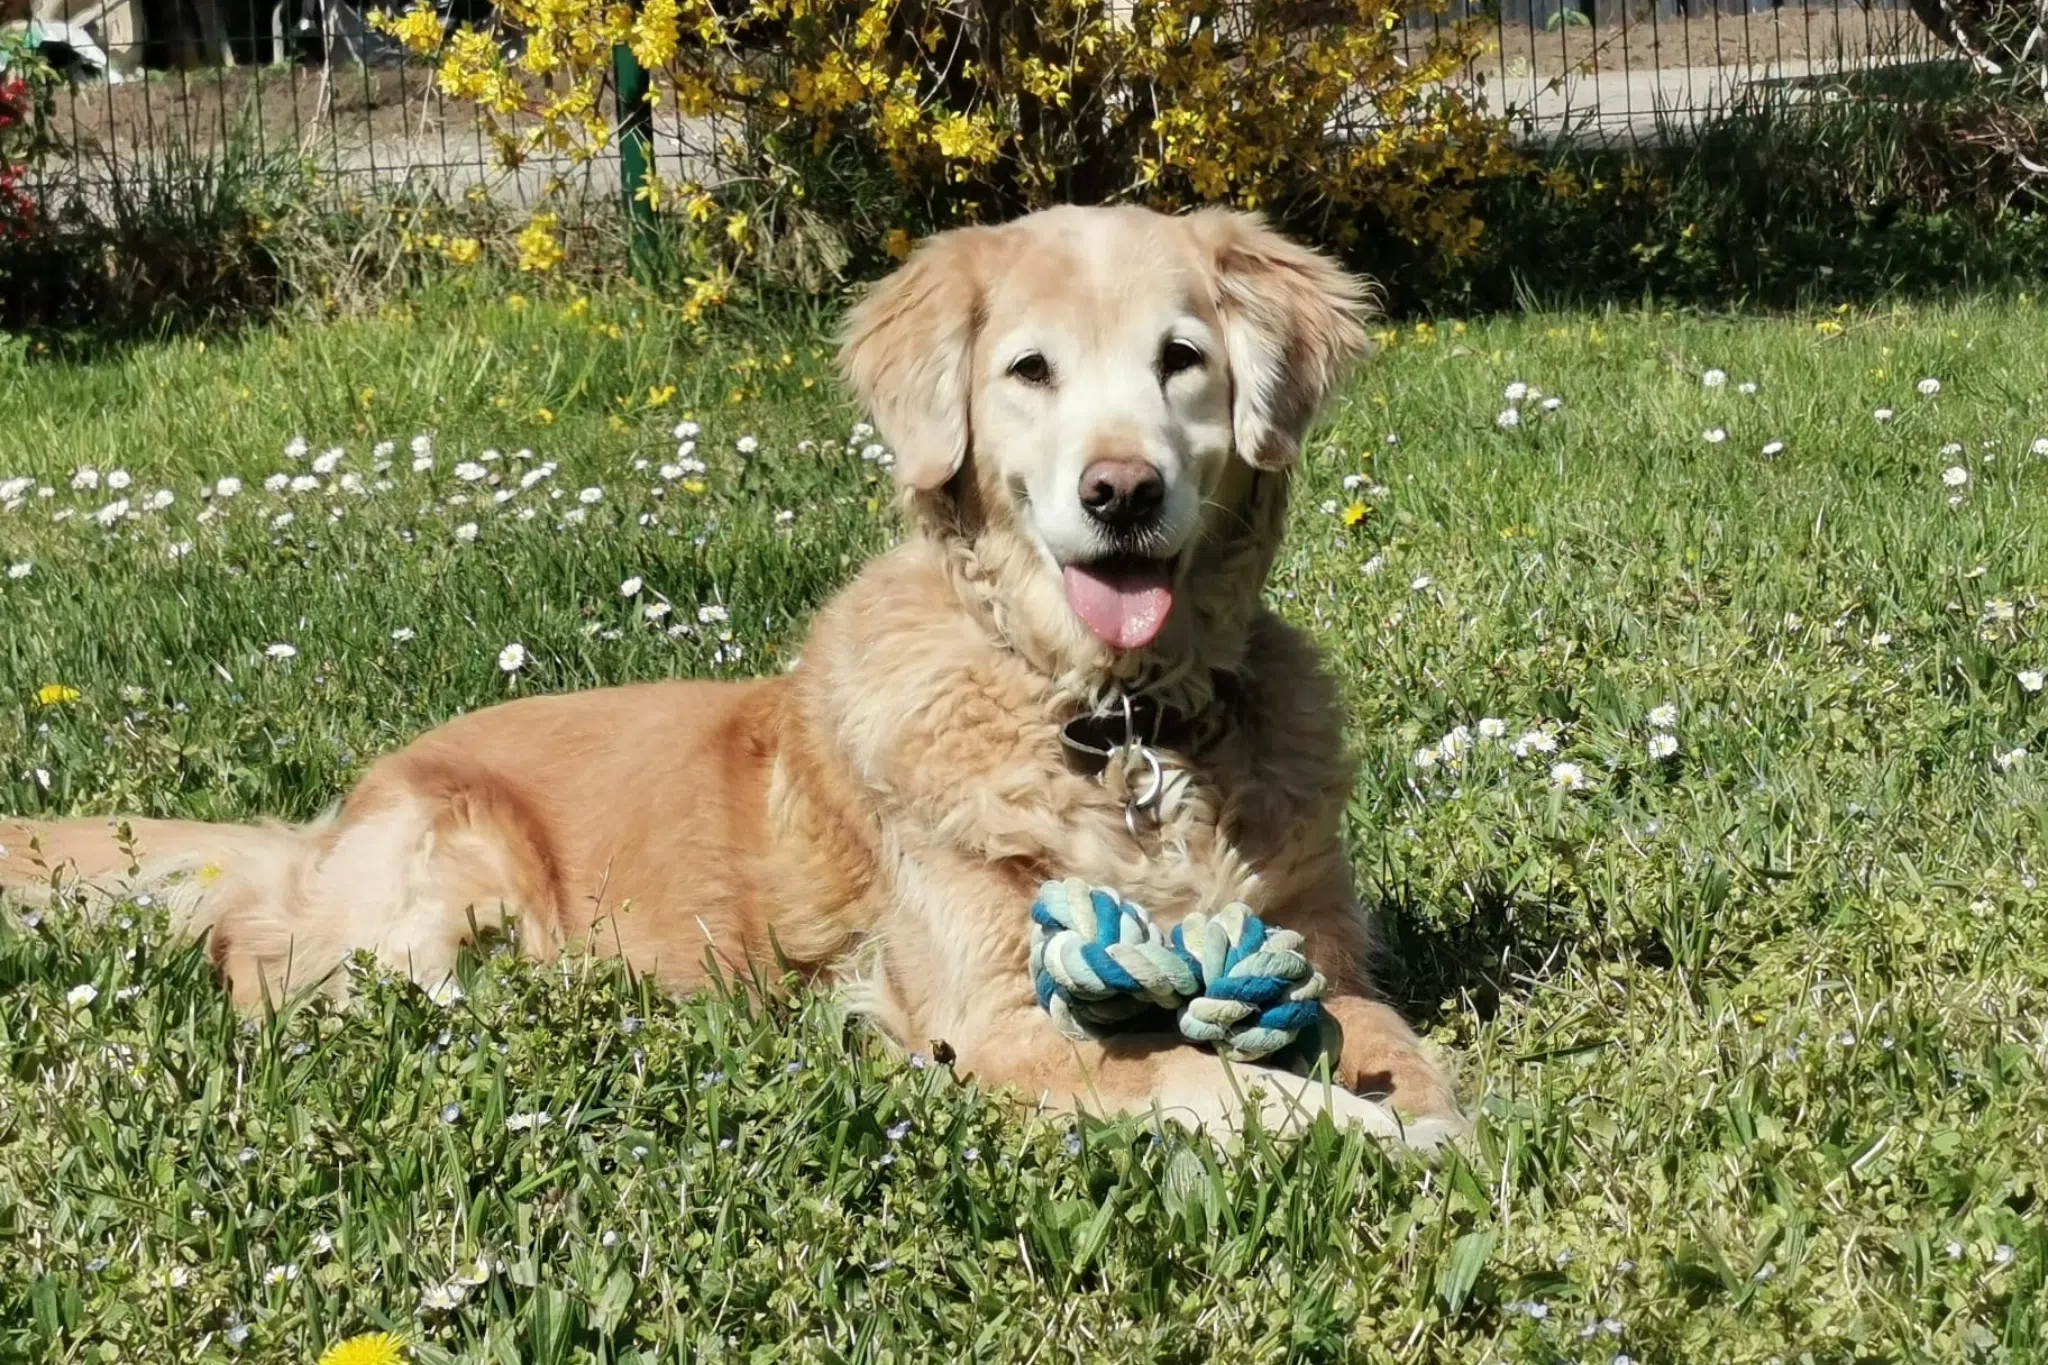 Hola, chien guide retraité est allongée dans l'herbe, un jouet entre ses pattes